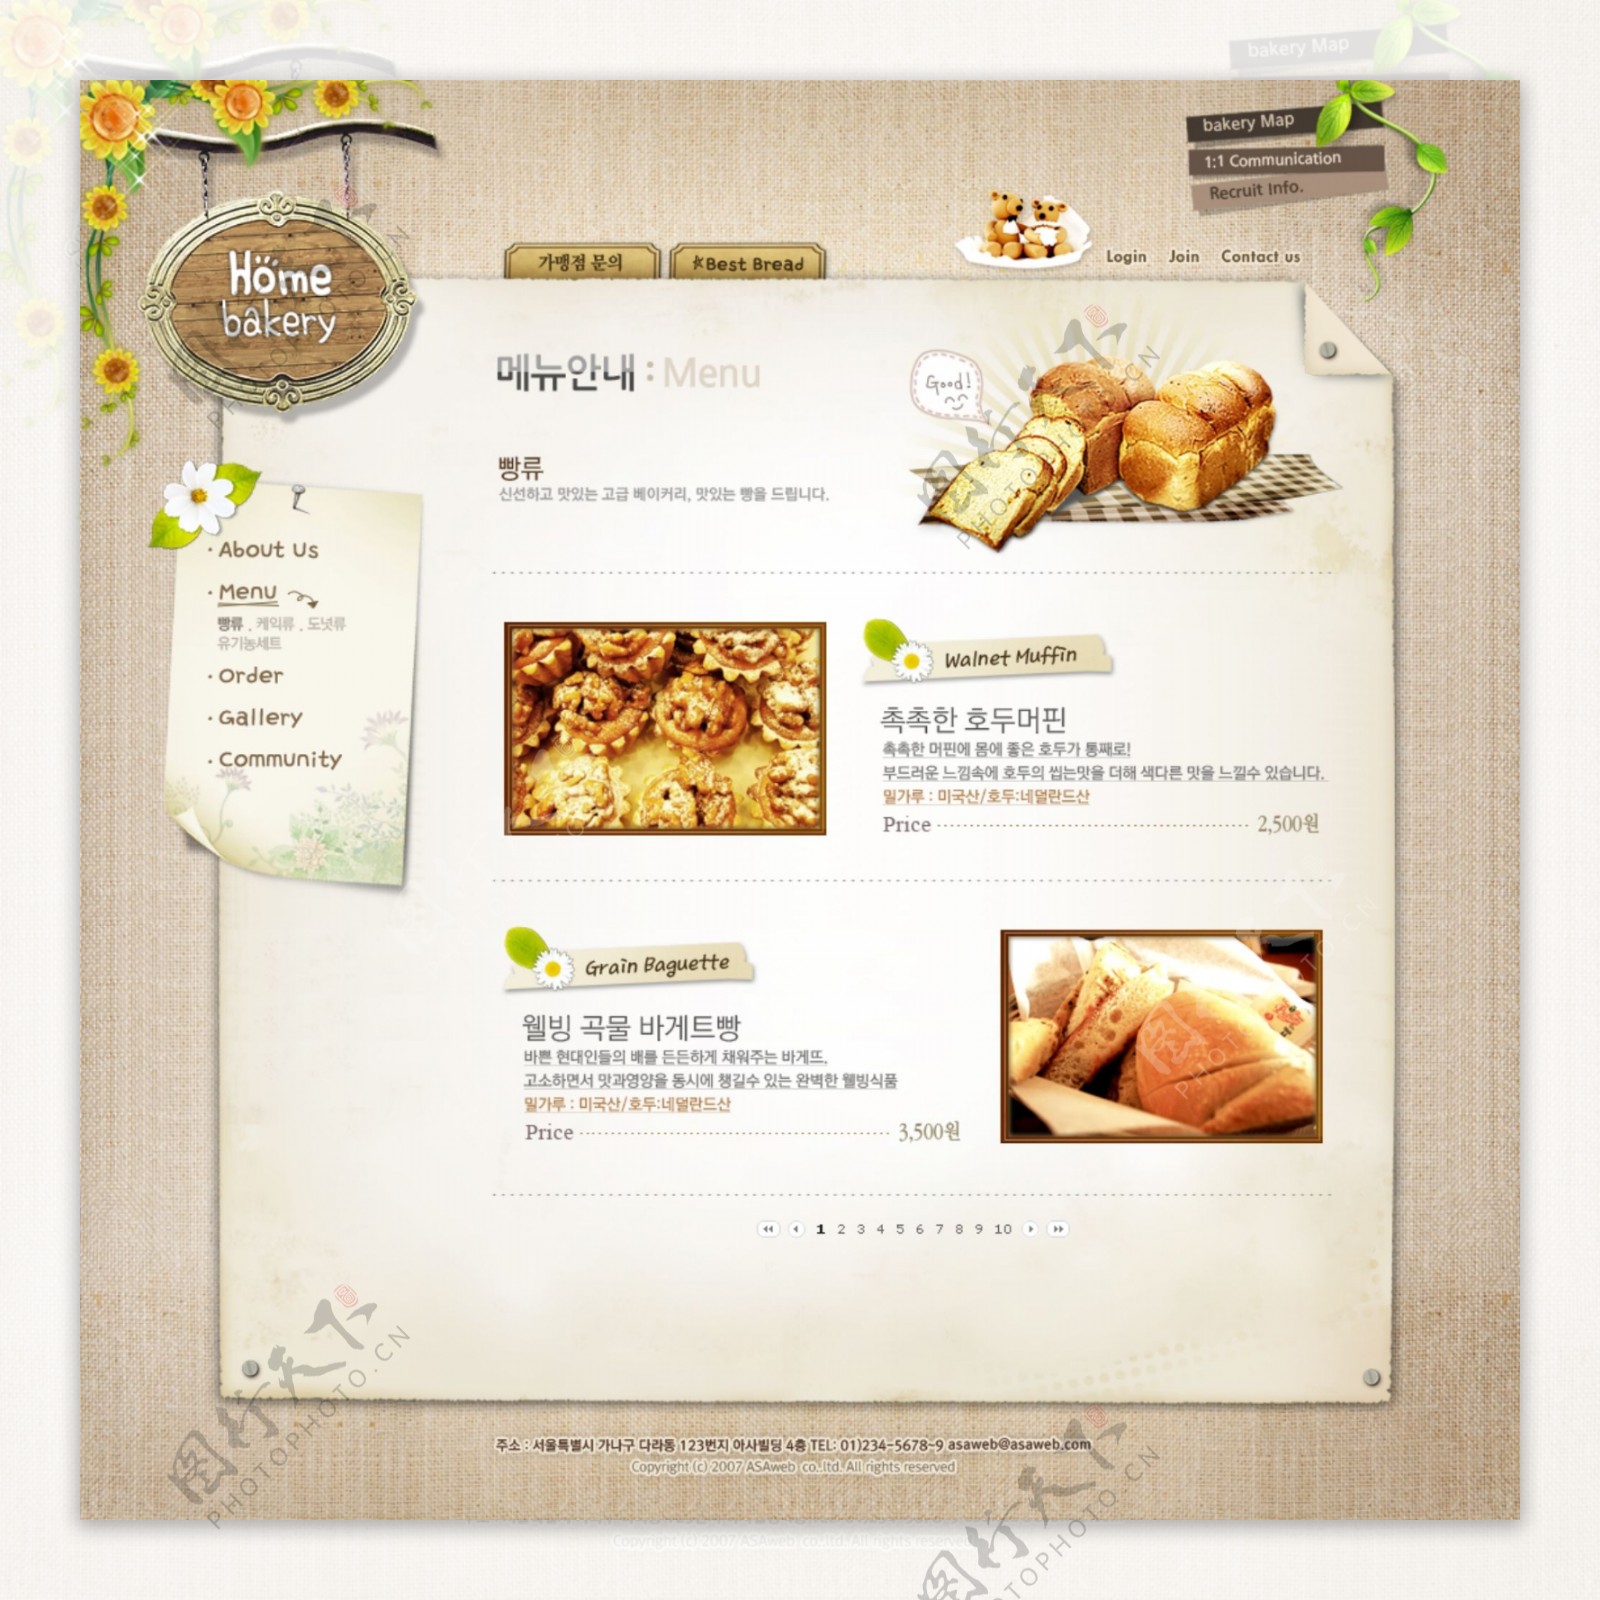 韩文网页模板子页图片